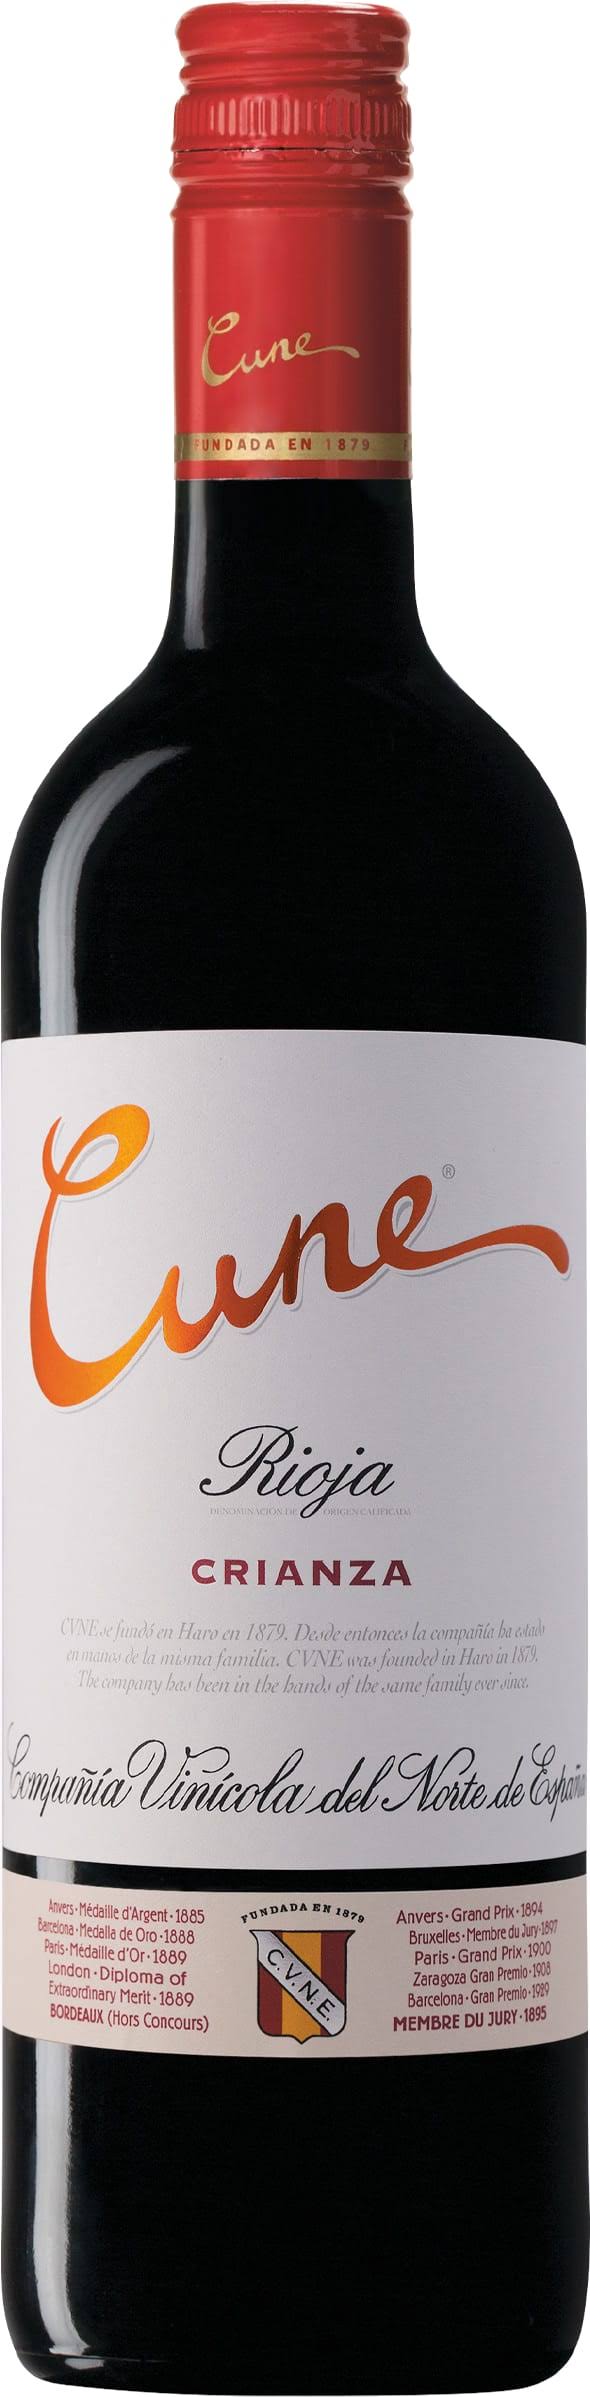 Cune Rioja Crianza / 750 ml